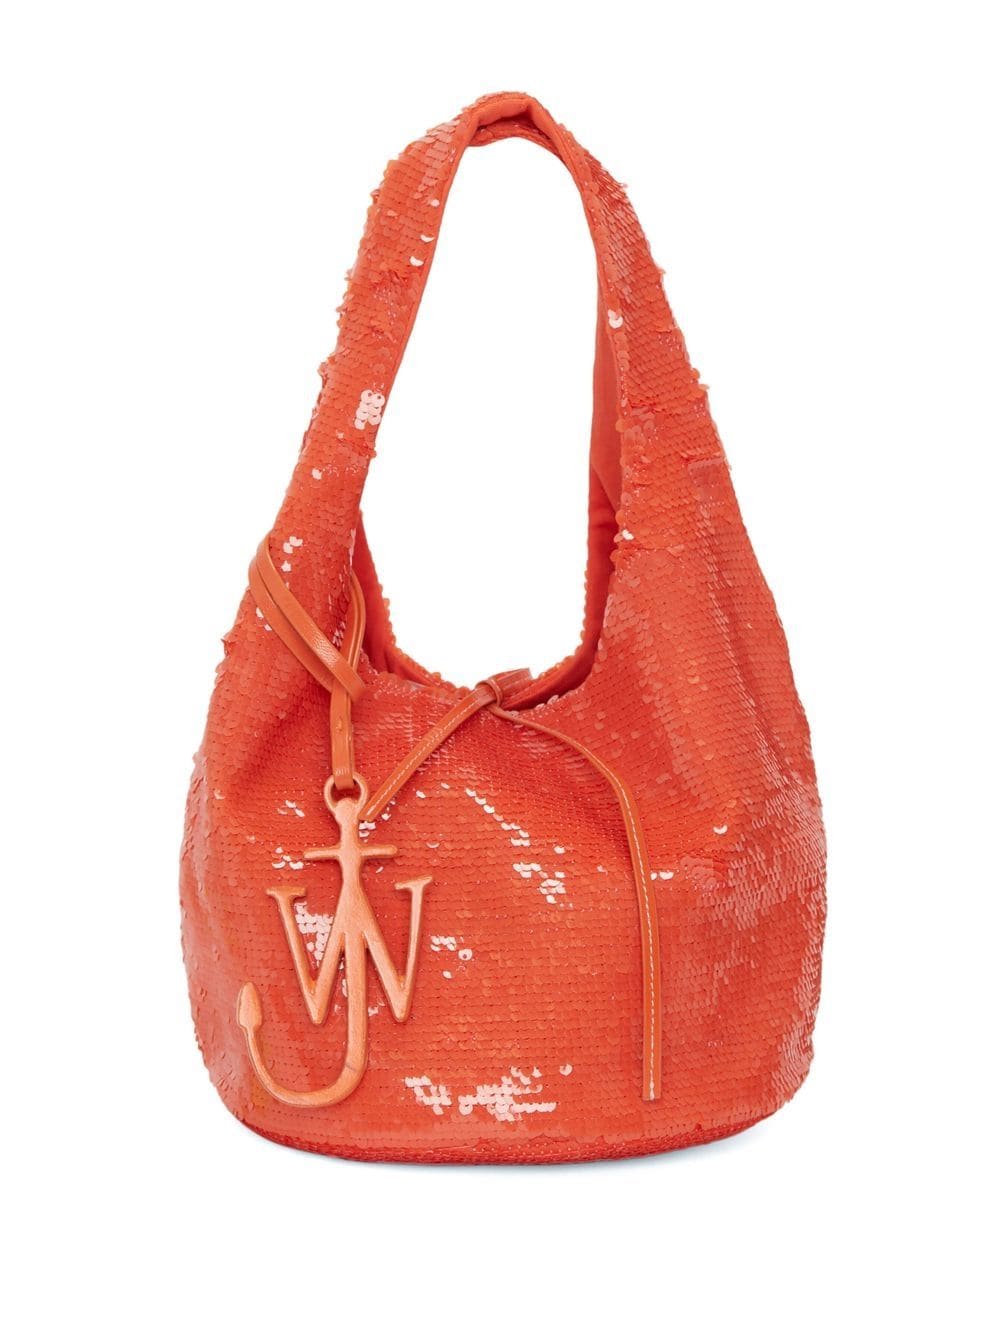 JW Anderson mini sequin-embellished bag - Orange